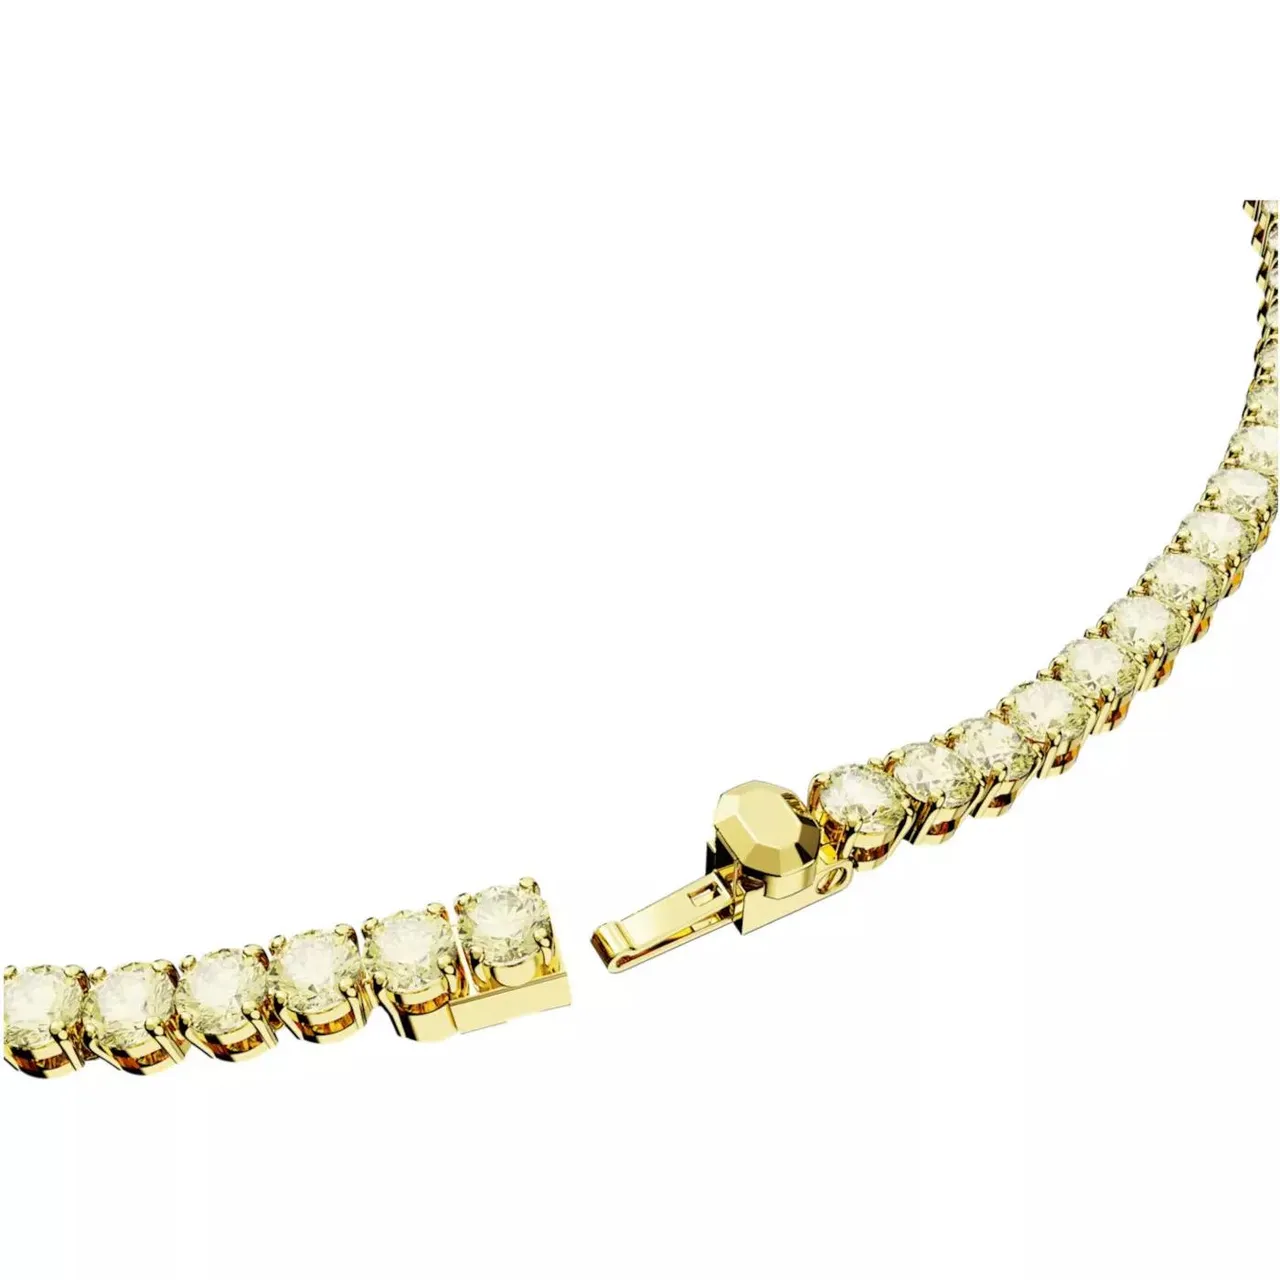 Swarovski Halskette - Swarovski Matrix Goldfarbene Kette 5661191 - Gr. unisize - in Gold - für Damen